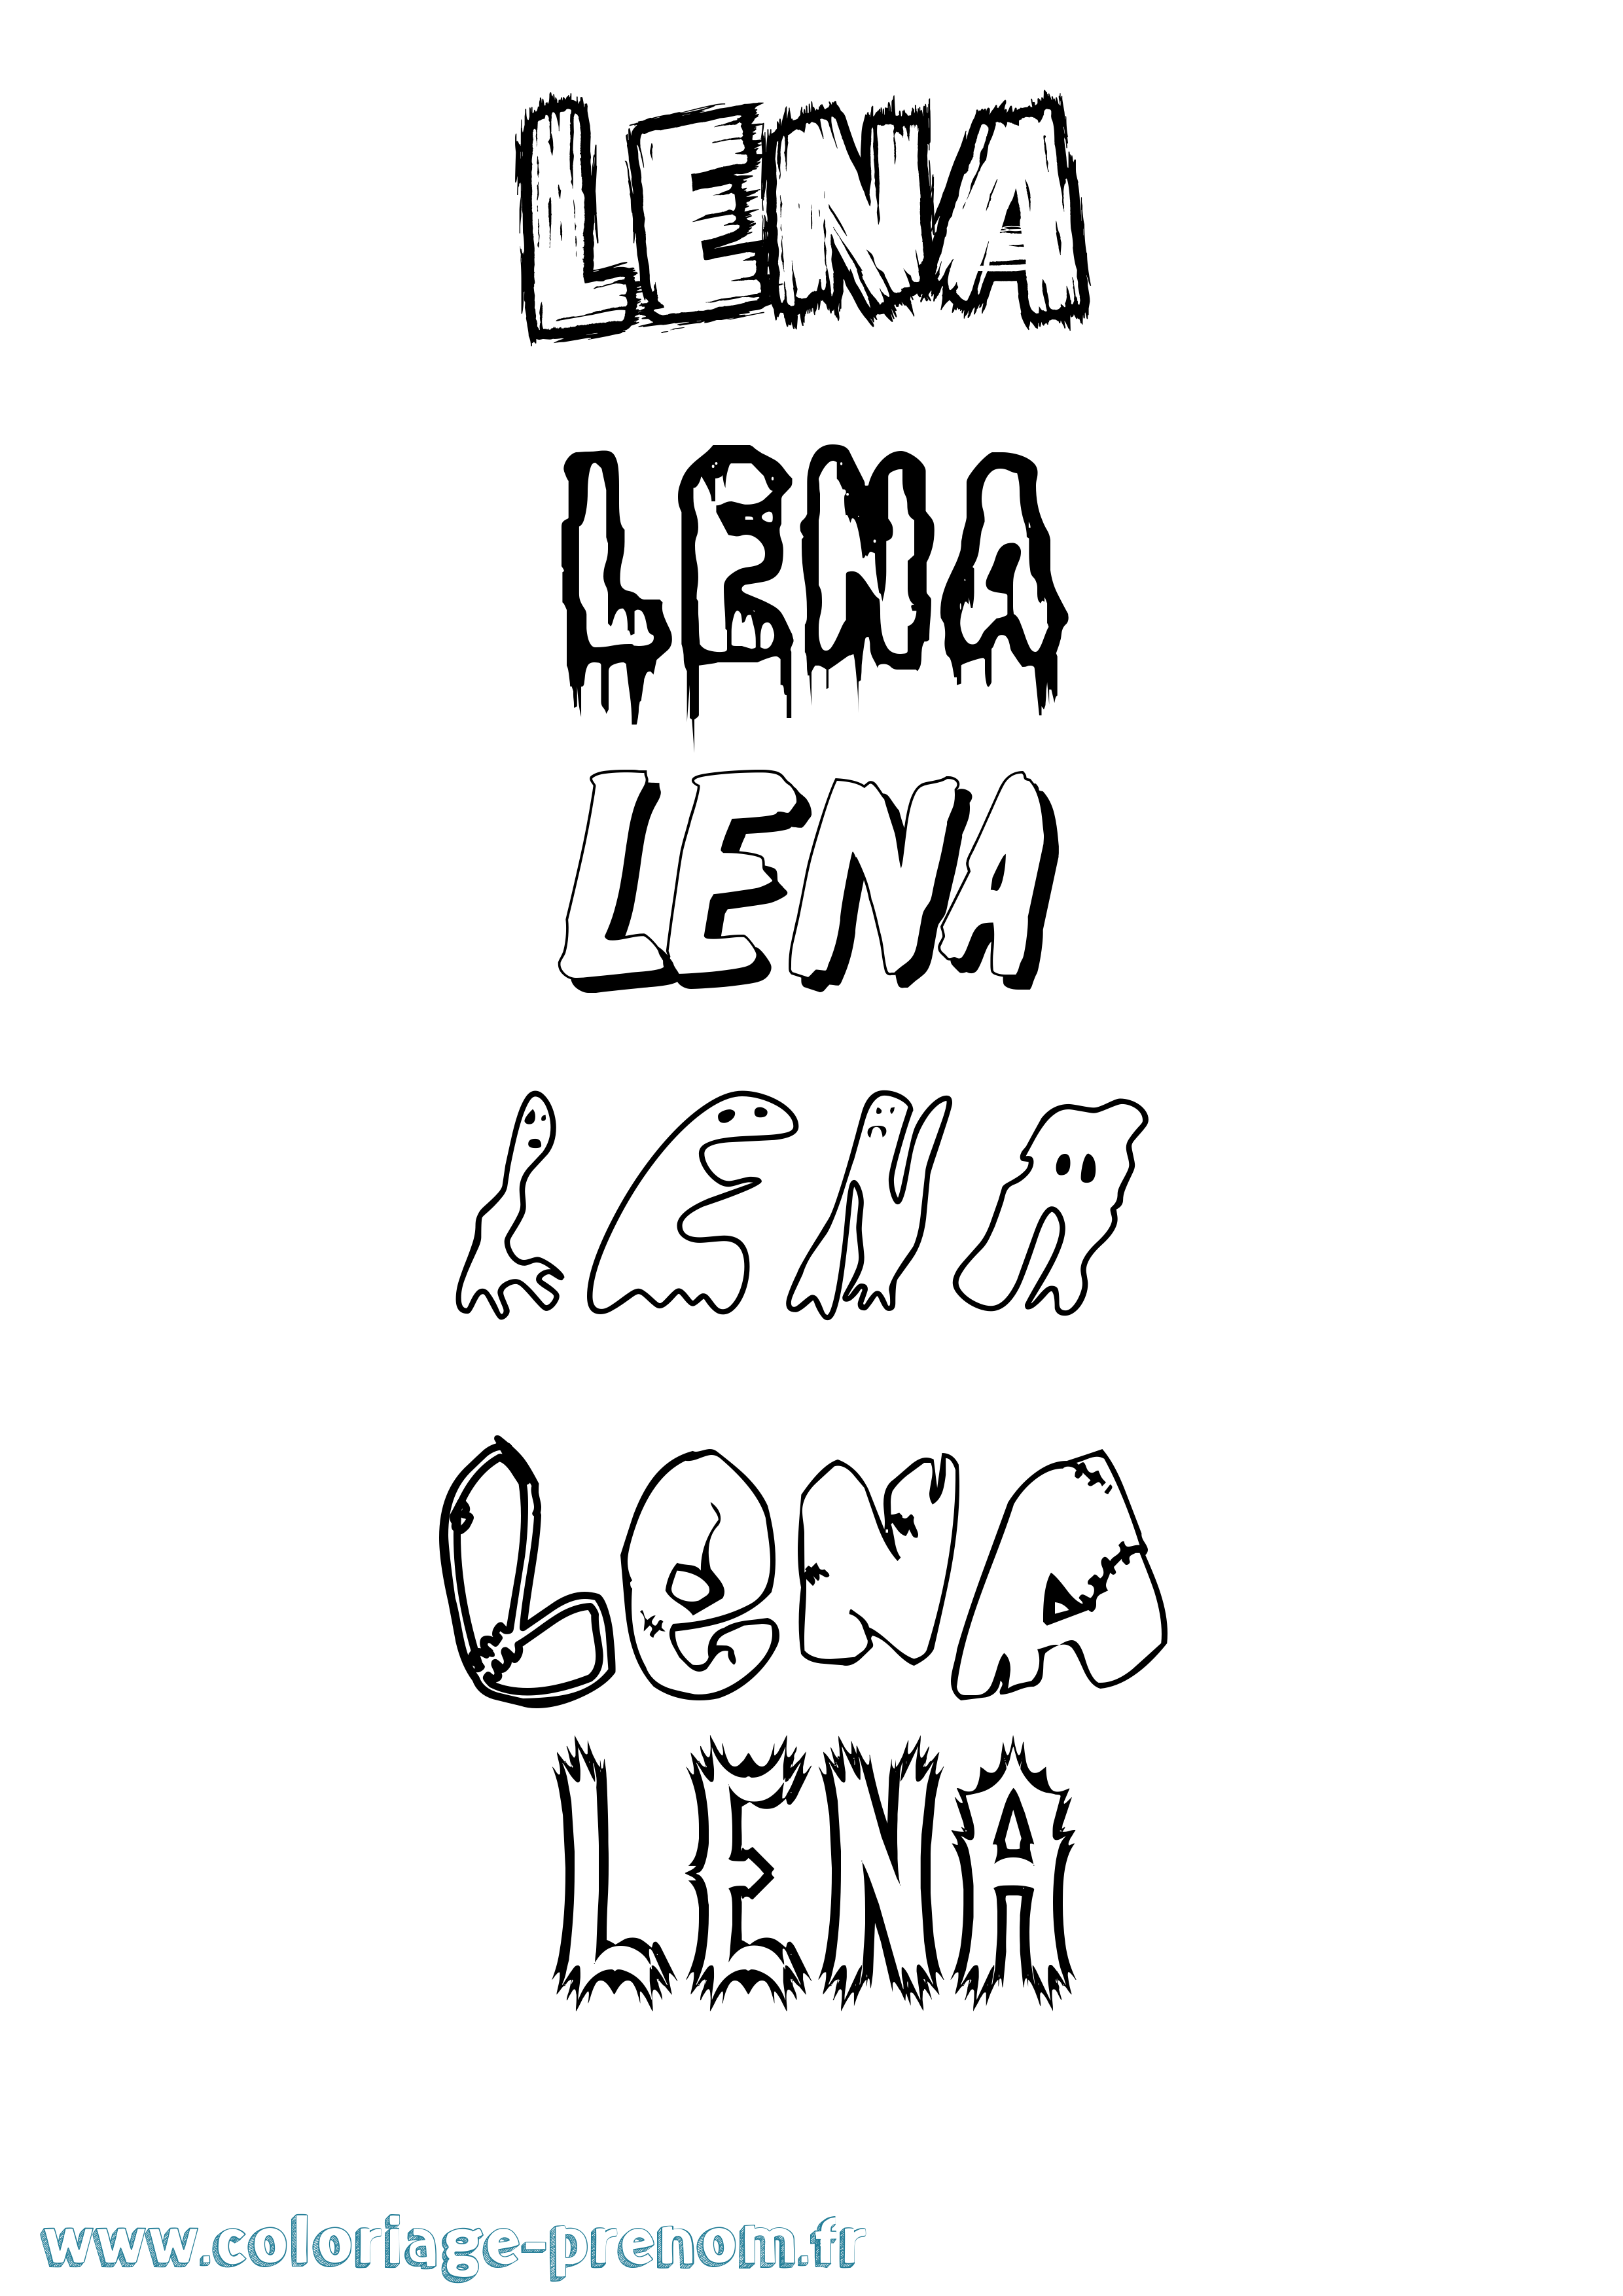 Coloriage prénom Lena Frisson